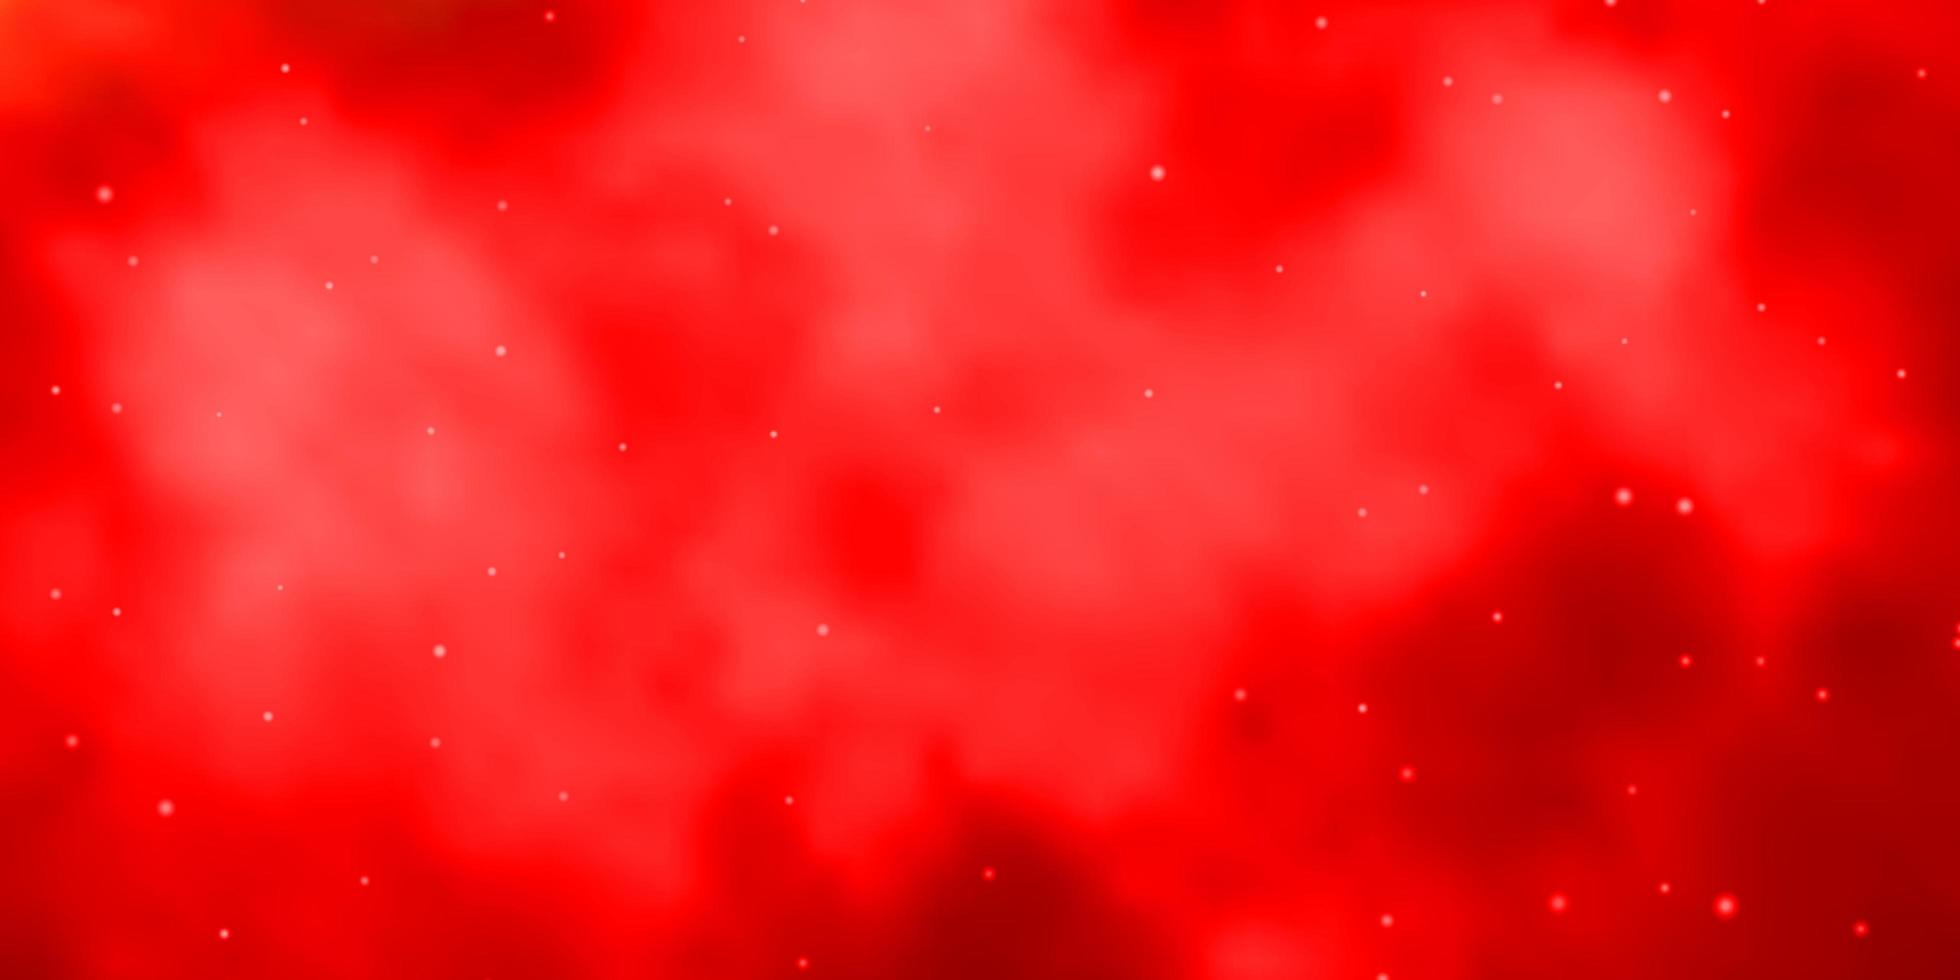 sfondo vettoriale rosso chiaro con stelle piccole e grandi.